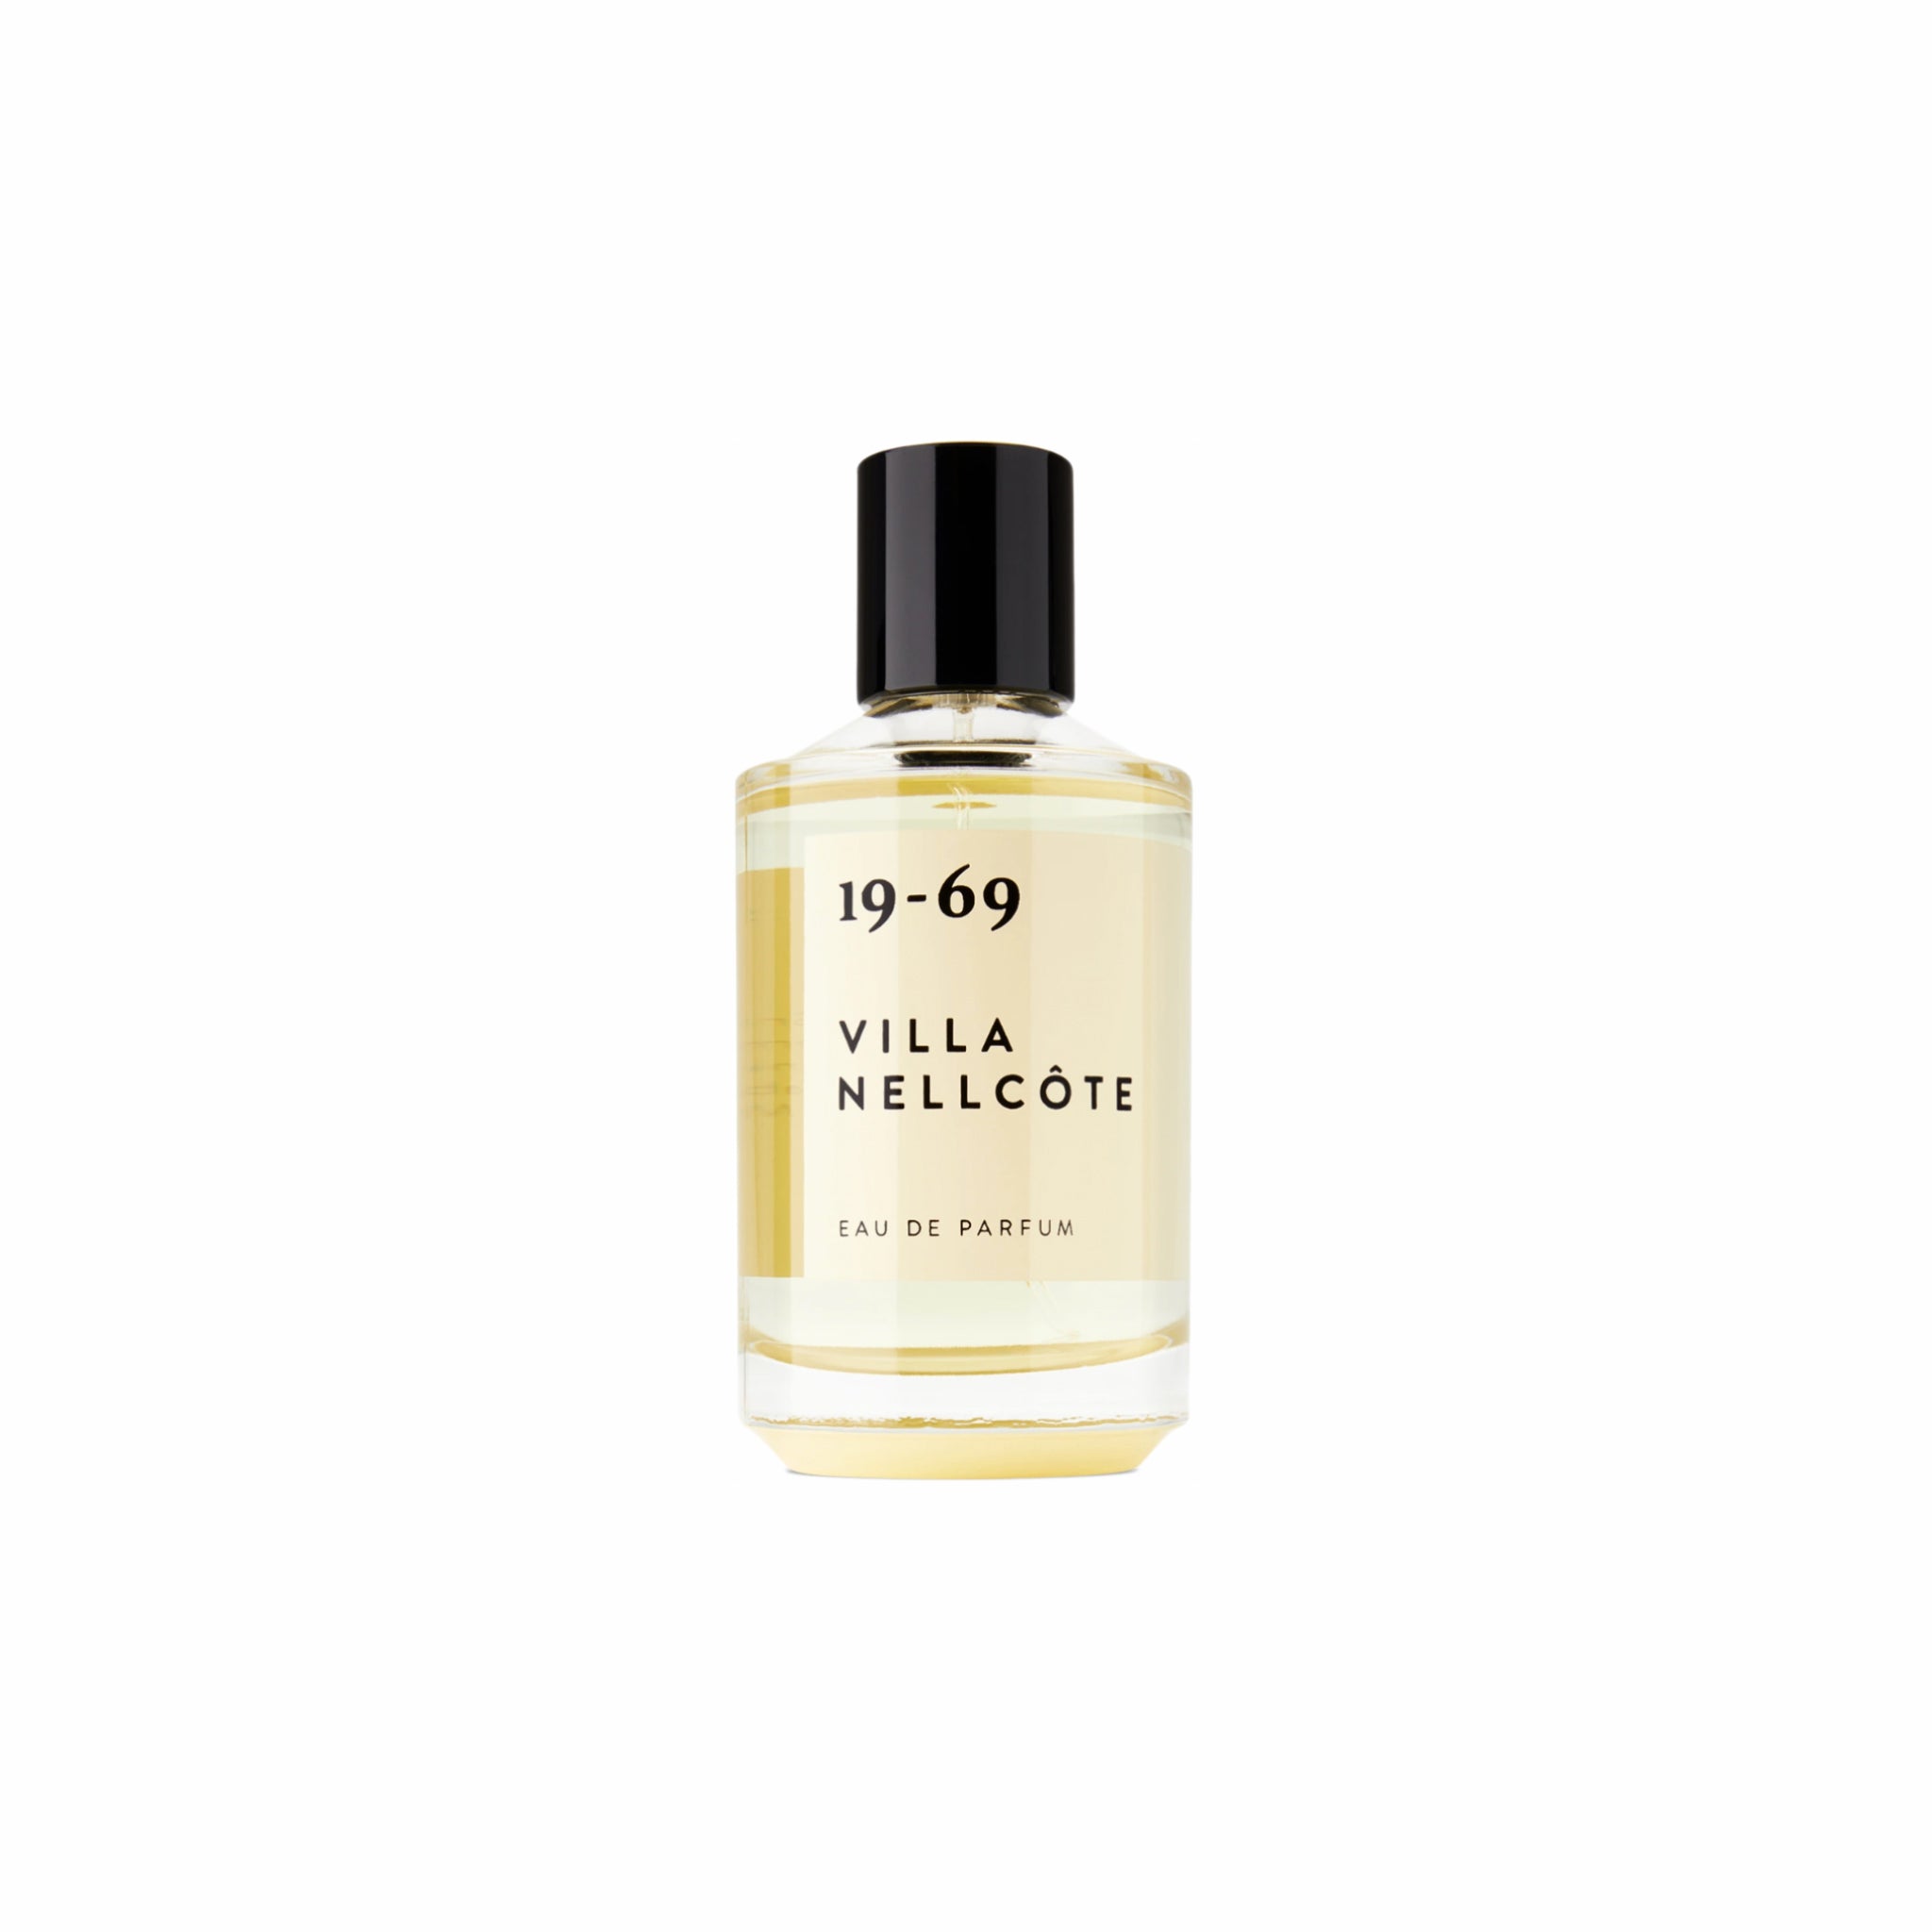 19-69, 19-69 Villa Nellcôte Eau de Parfum (50 ml)